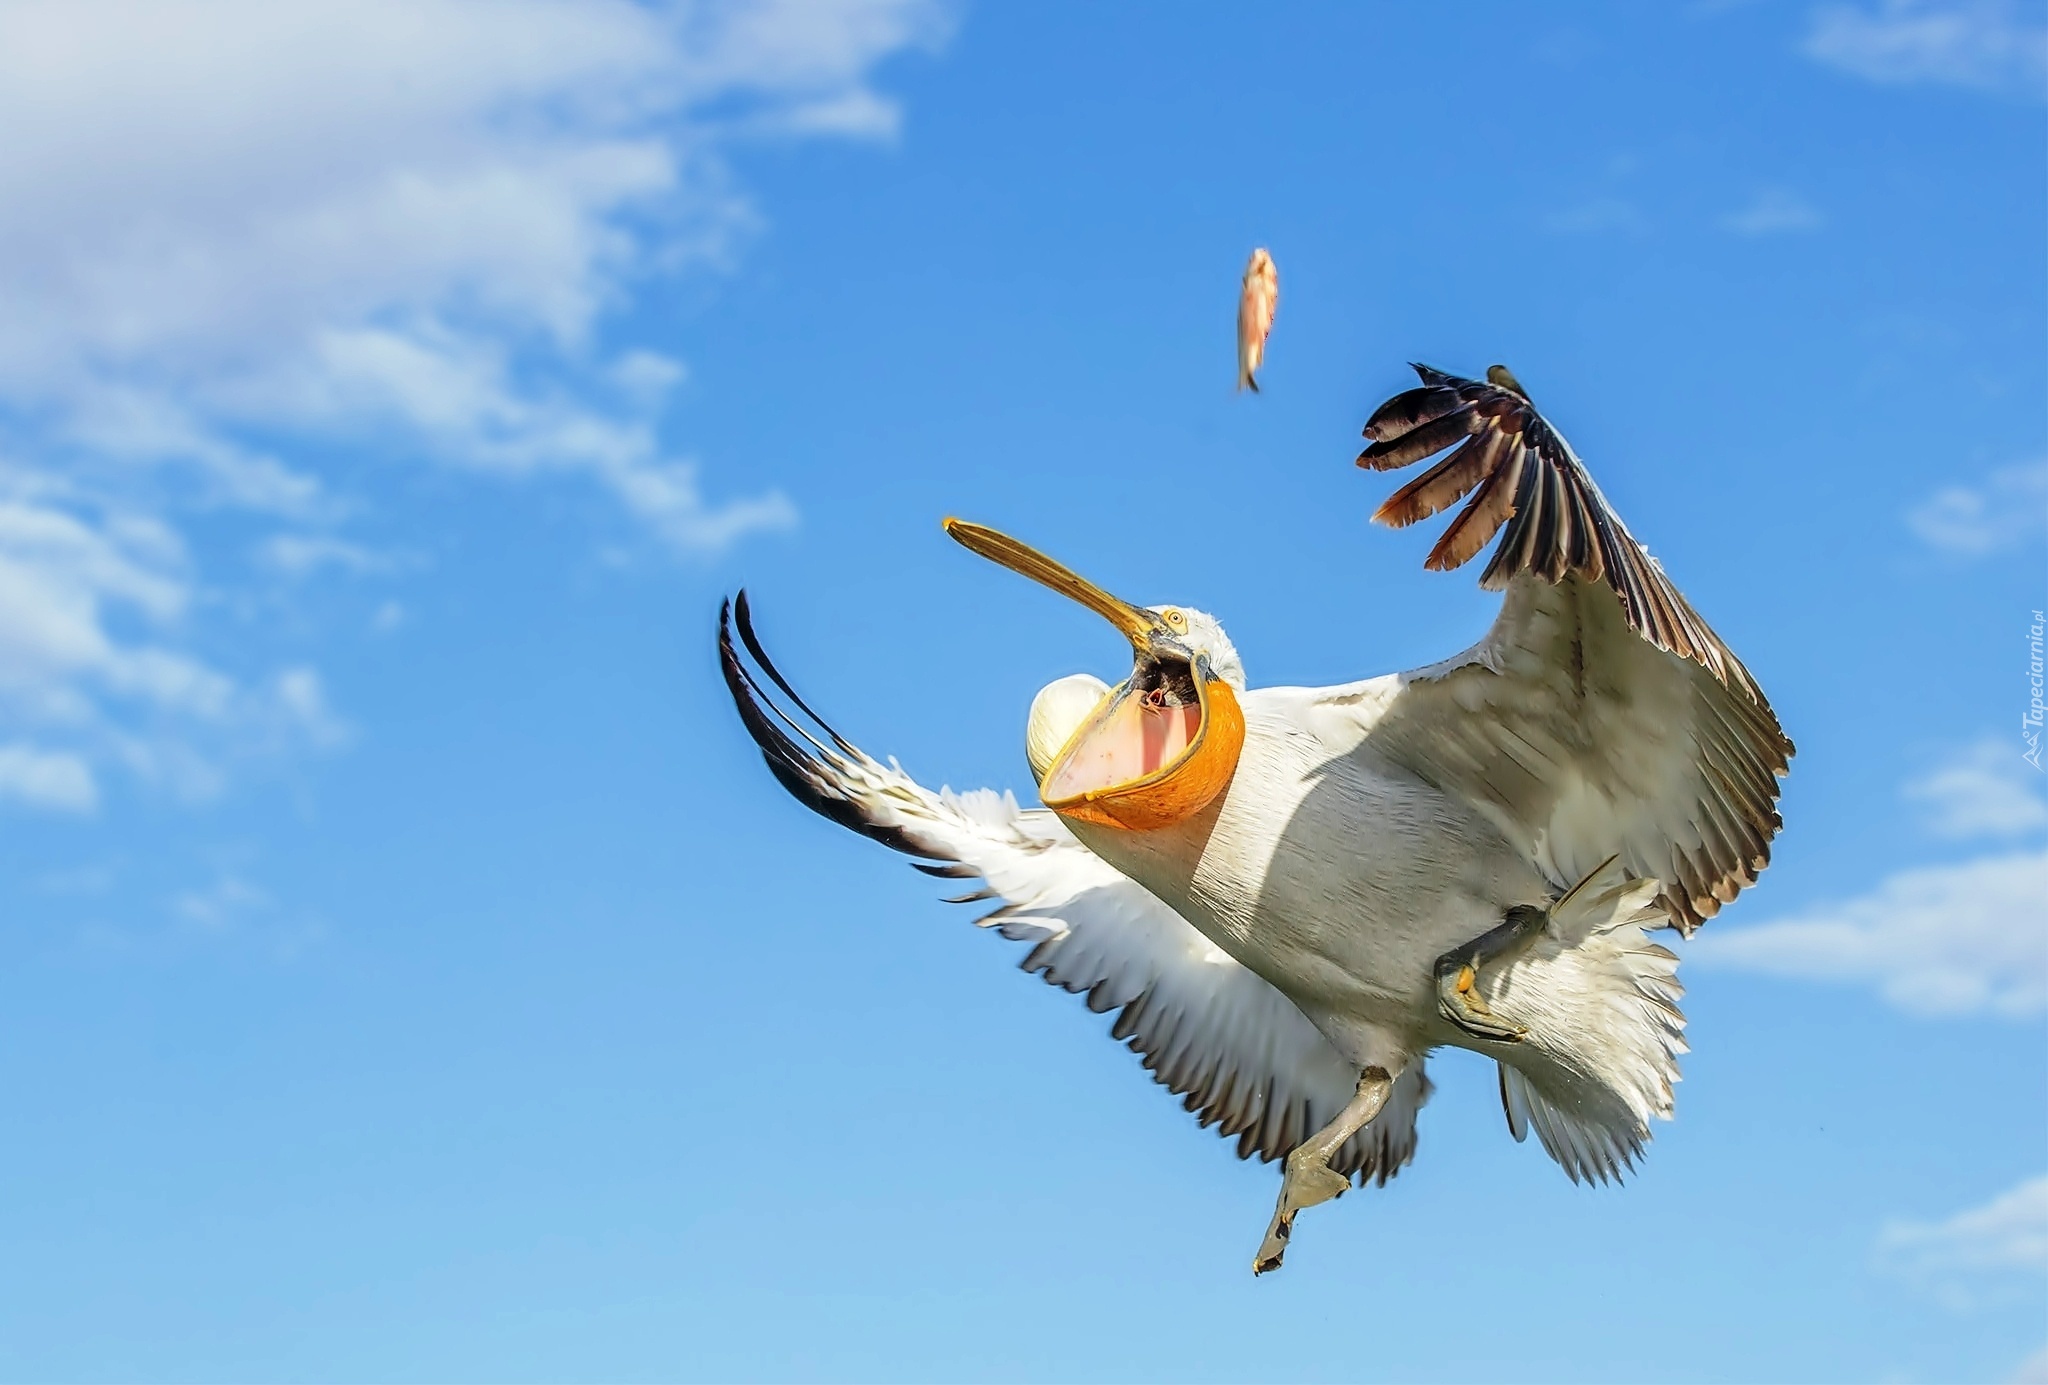 Весел как птичка. Птица в полёте. Пеликан в полете. Полет пеликана. Чайка с расправленными крыльями.